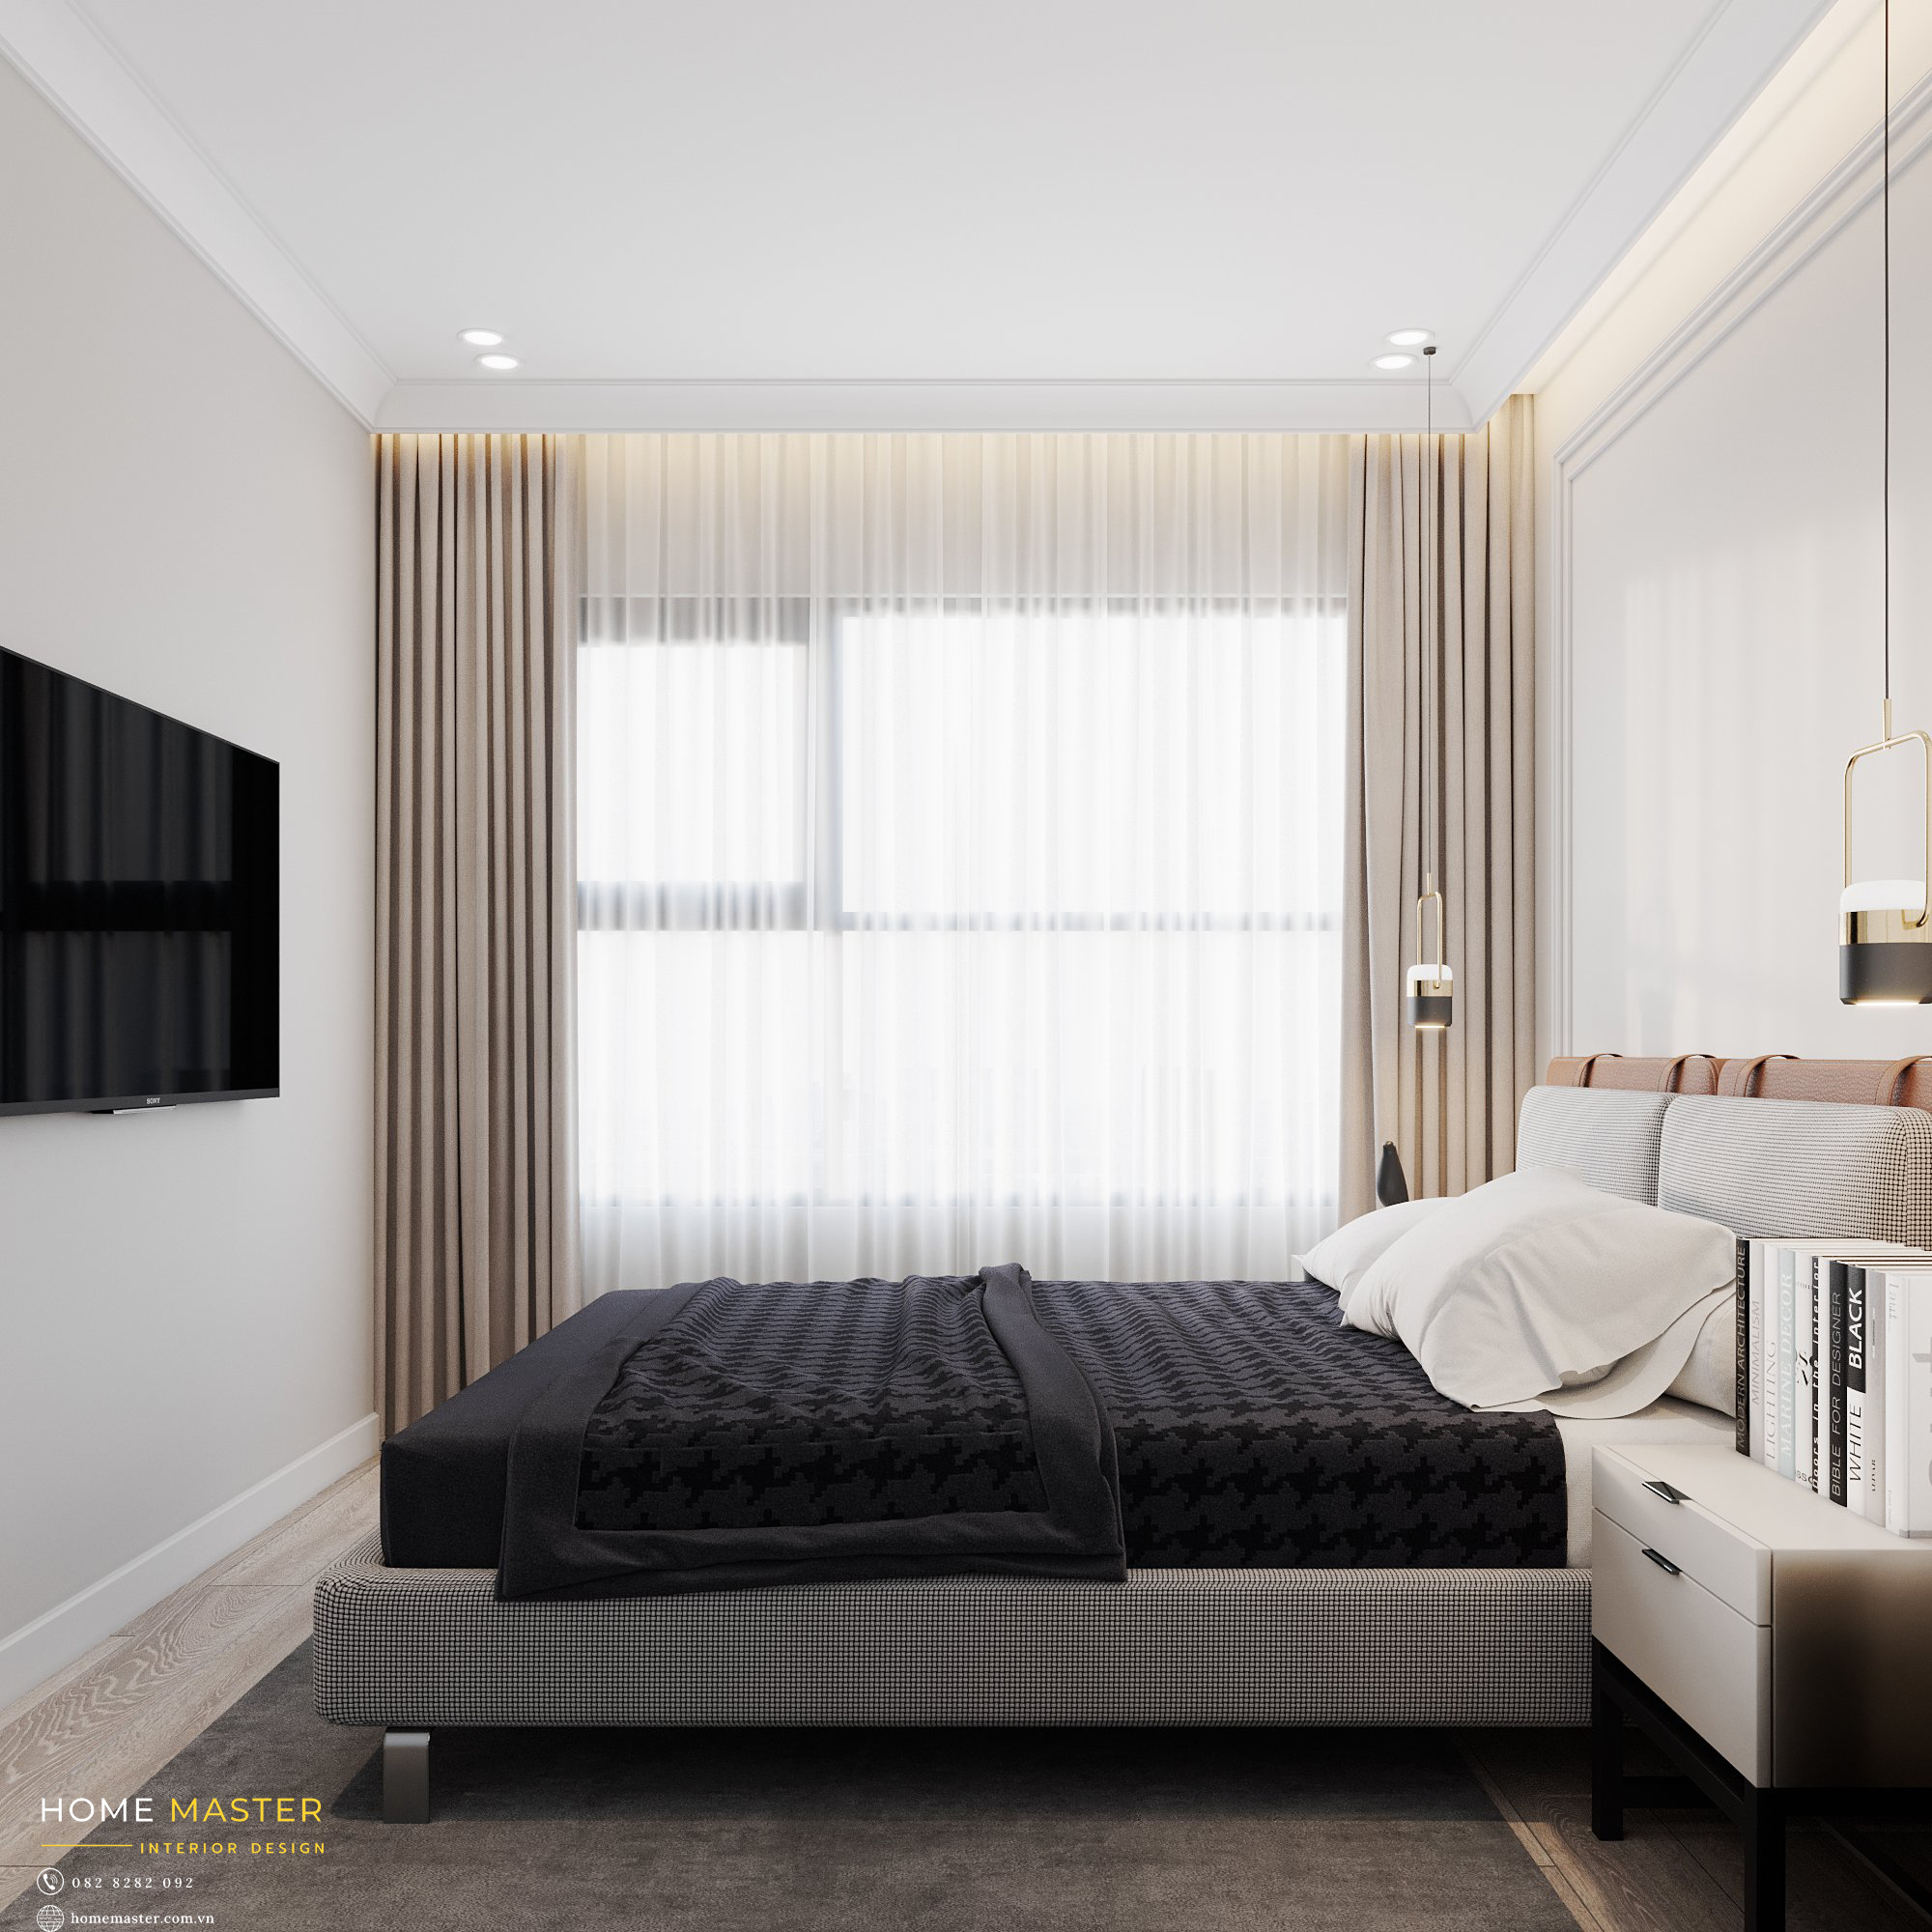 Giống như thiết kế phòng khách, phòng ngủ Master chú trọng vào ánh sáng tự nhiên để tạo cho gia chủ một không gian sử dụng thoải mái nhất.